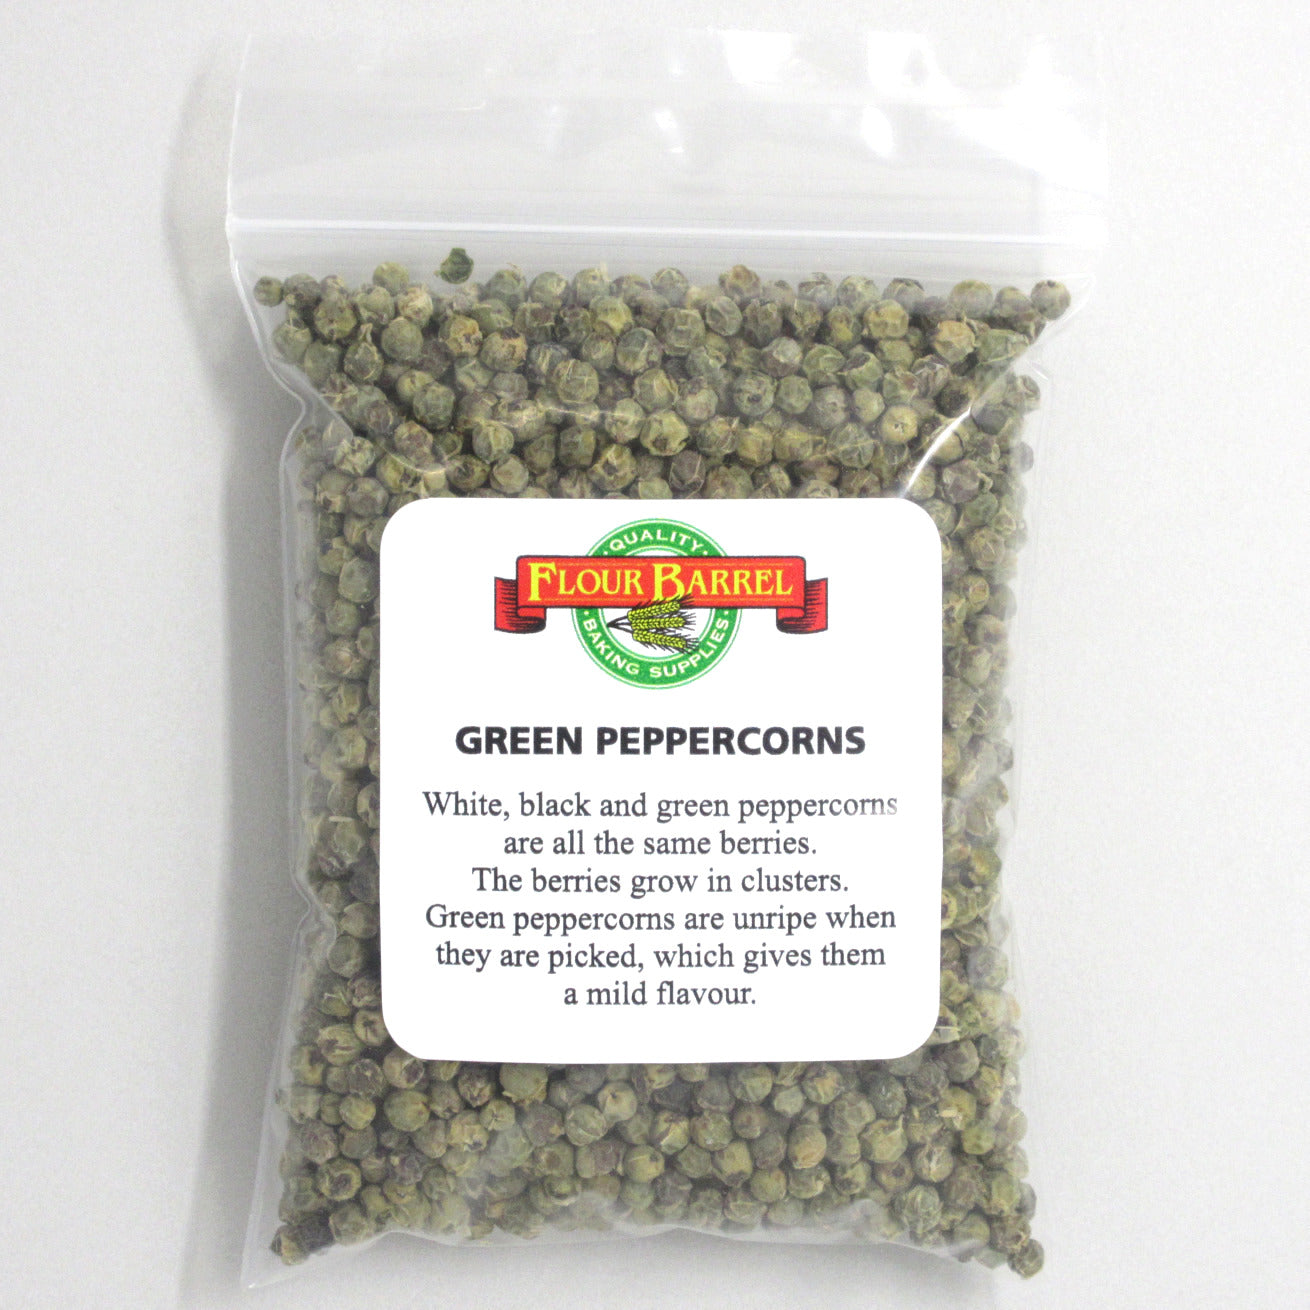 Flour Barrel product image - Green Peppercorns